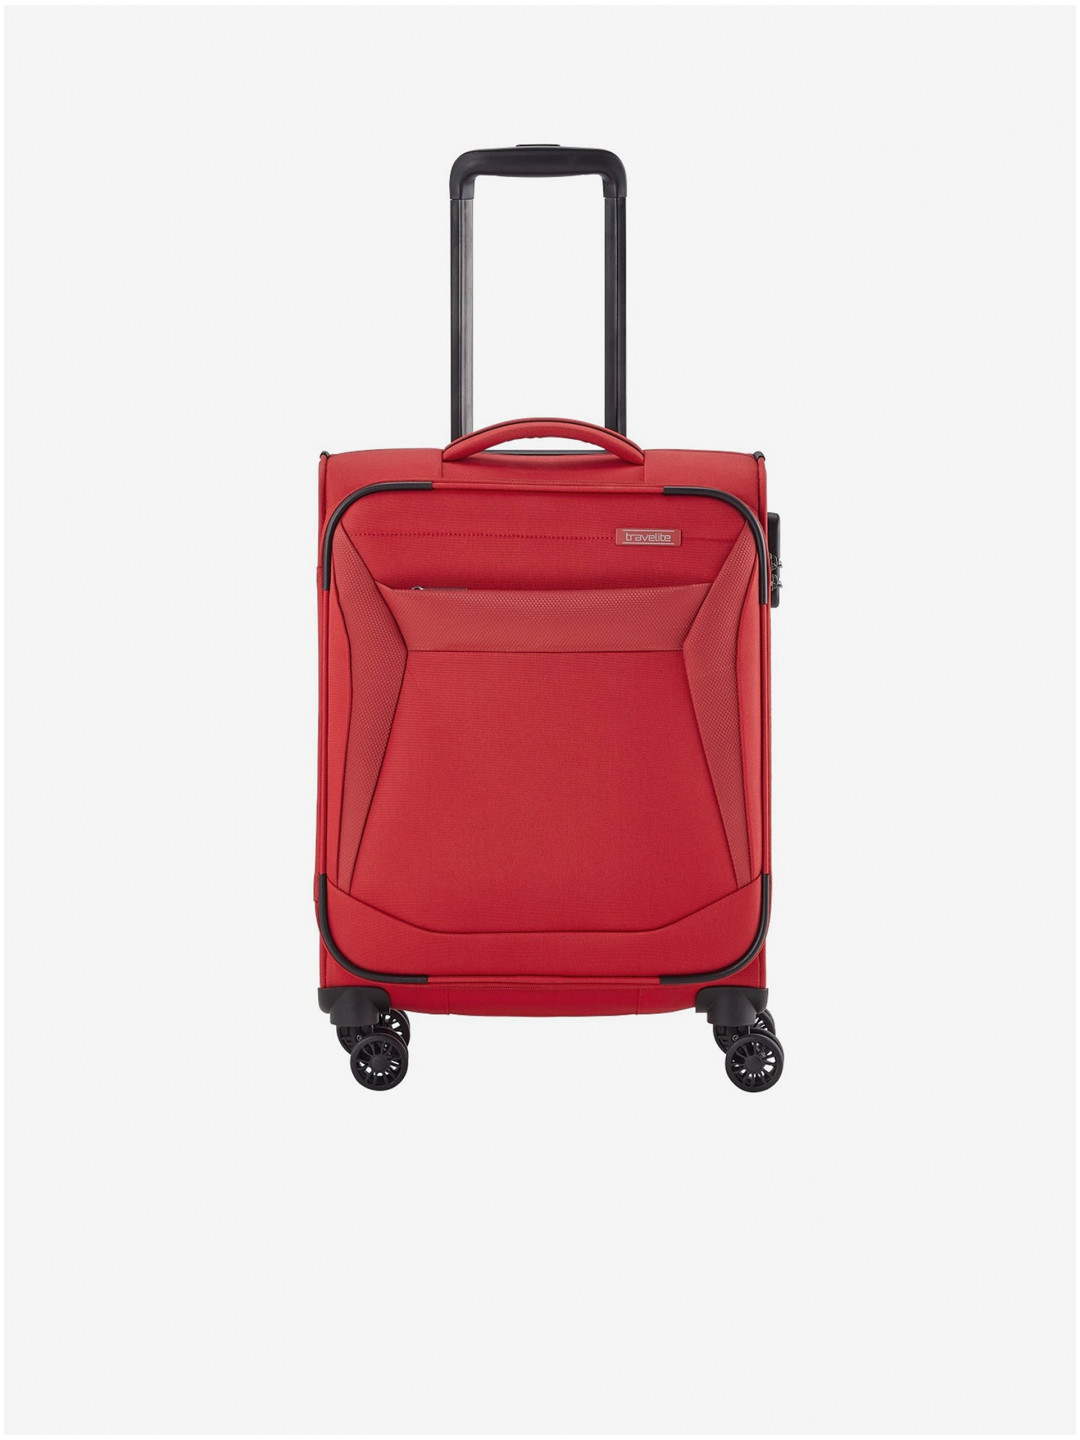 Červený cestovní kufr Travelite Chios S